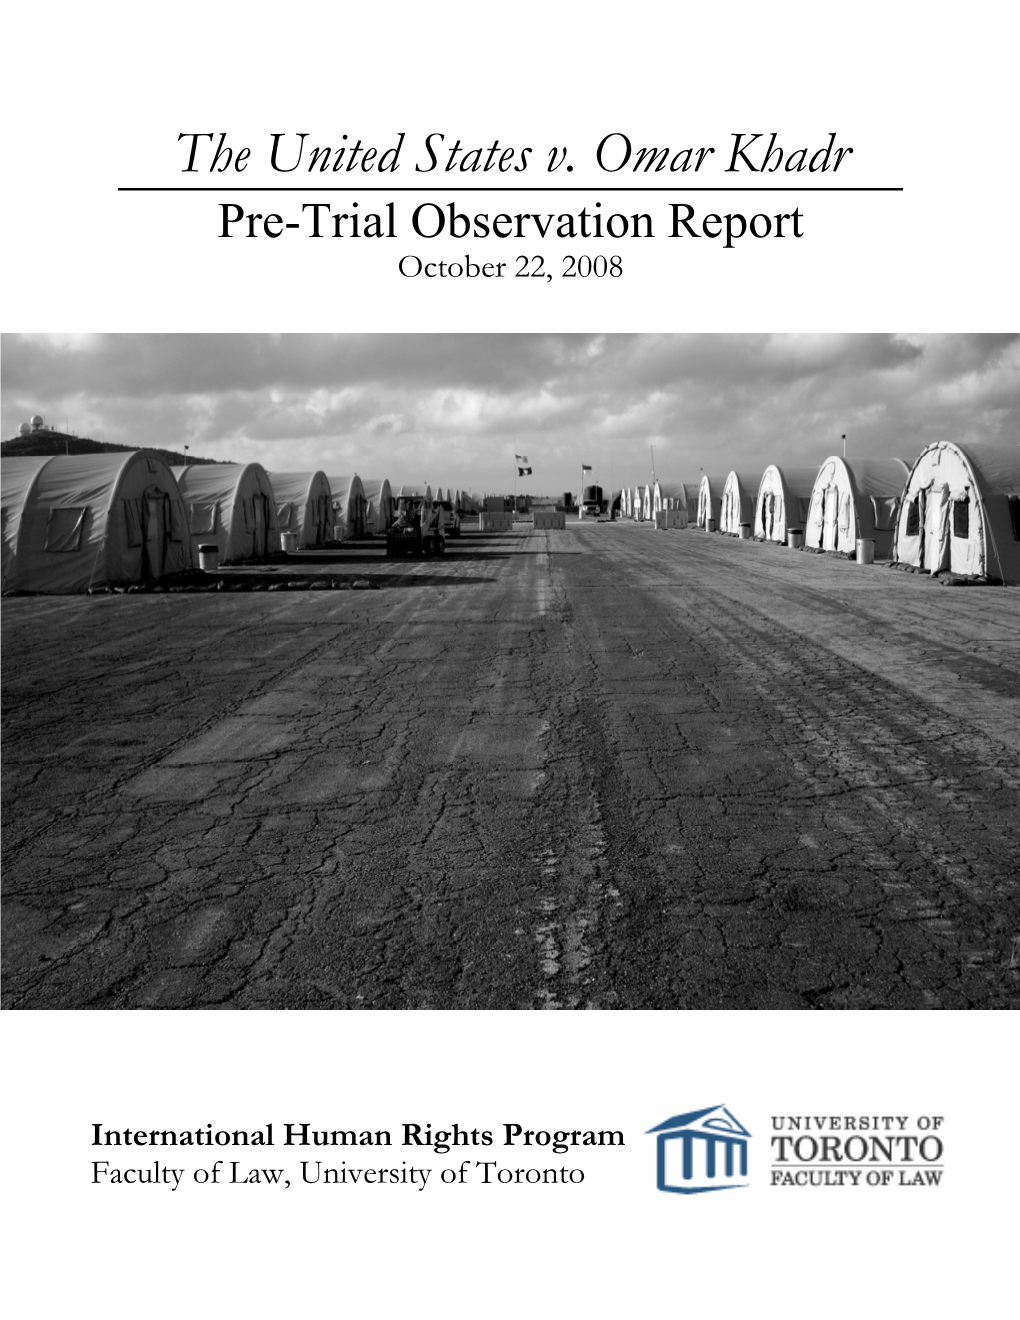 The United States V. Omar Khadr Pre-Trial Observation Report October 22, 2008